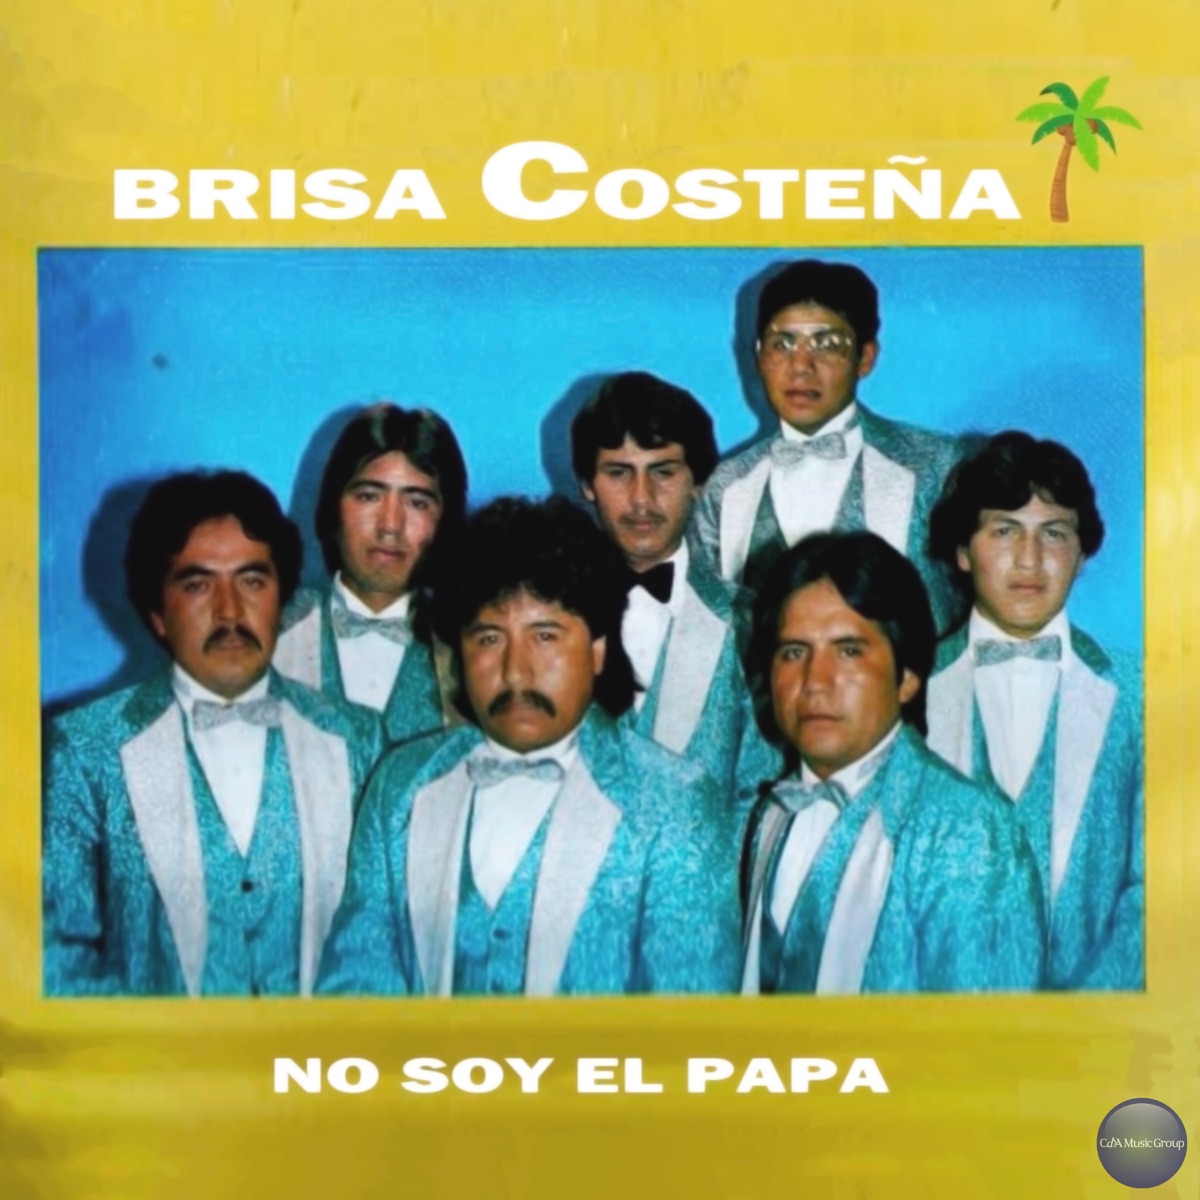 No Soy el Papá - Album by Brisa Costeña - Apple Music